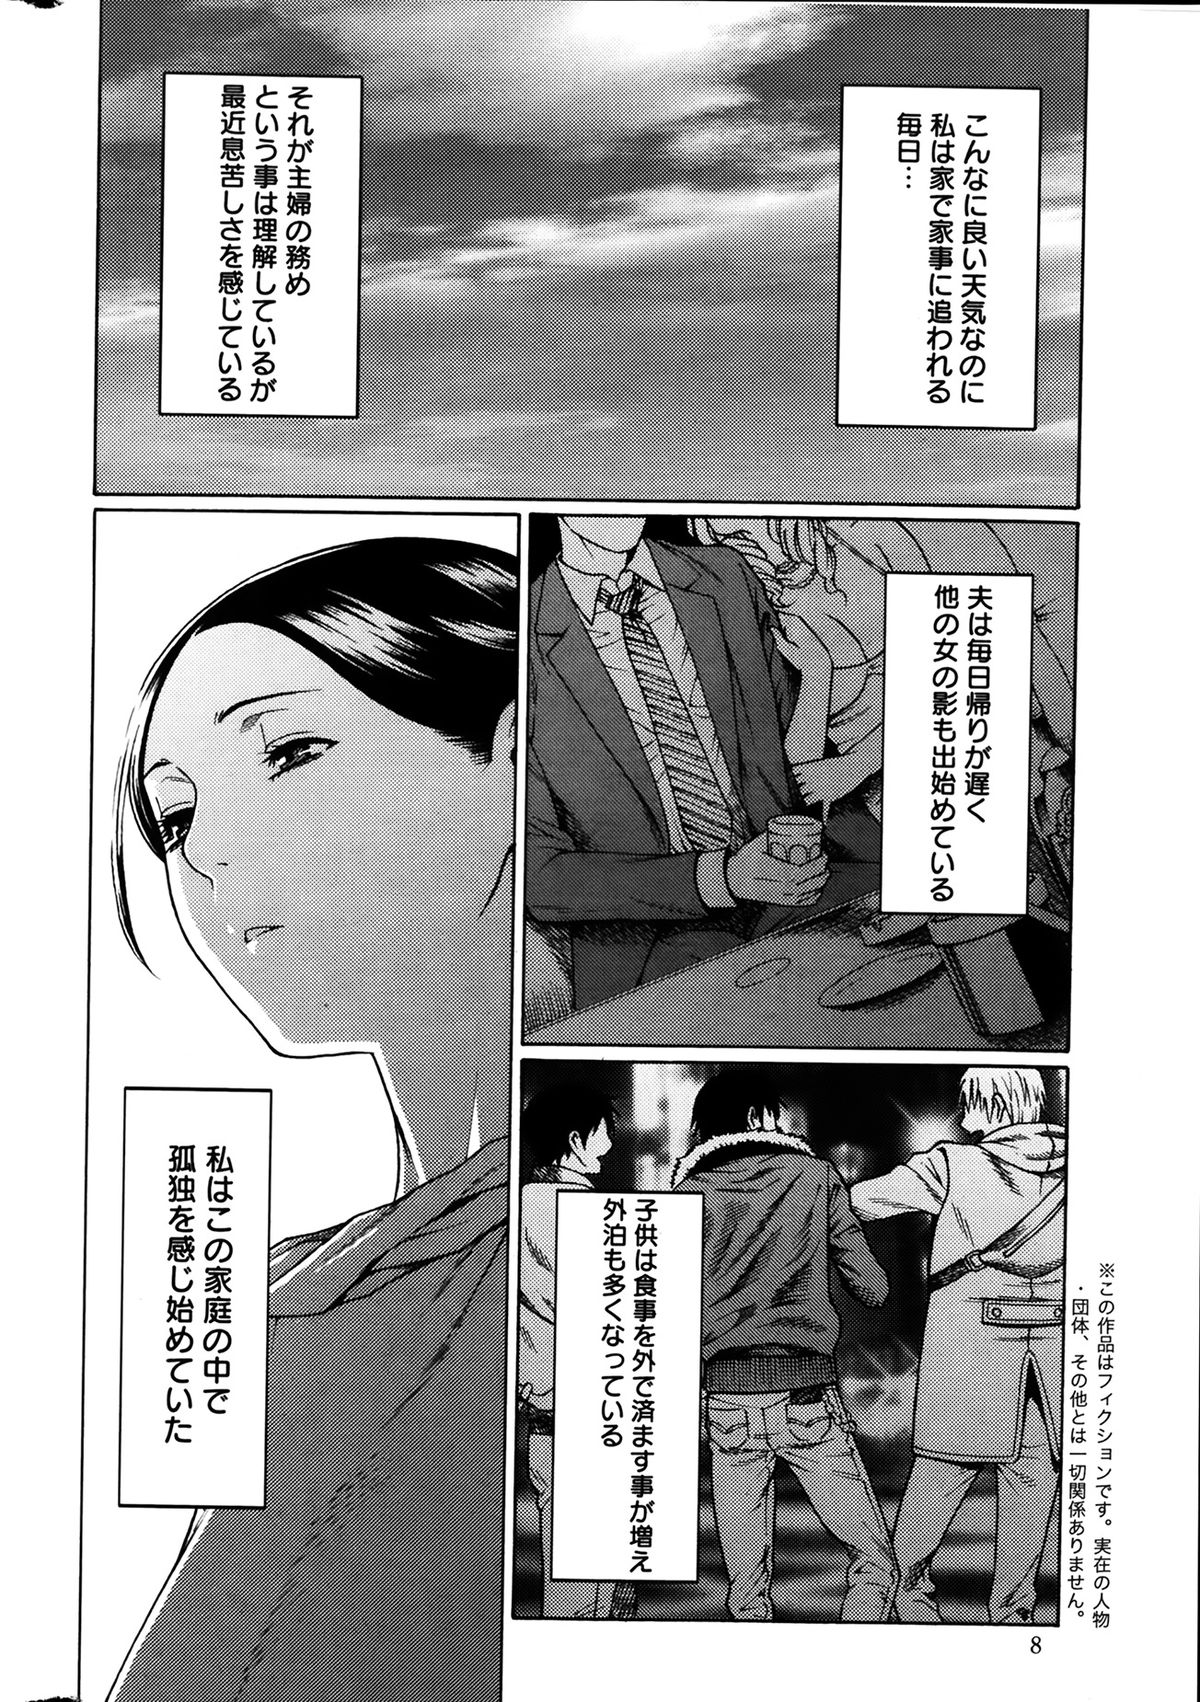 [Takasugi Kou] Madam Palace Ch.1-6 page 6 full